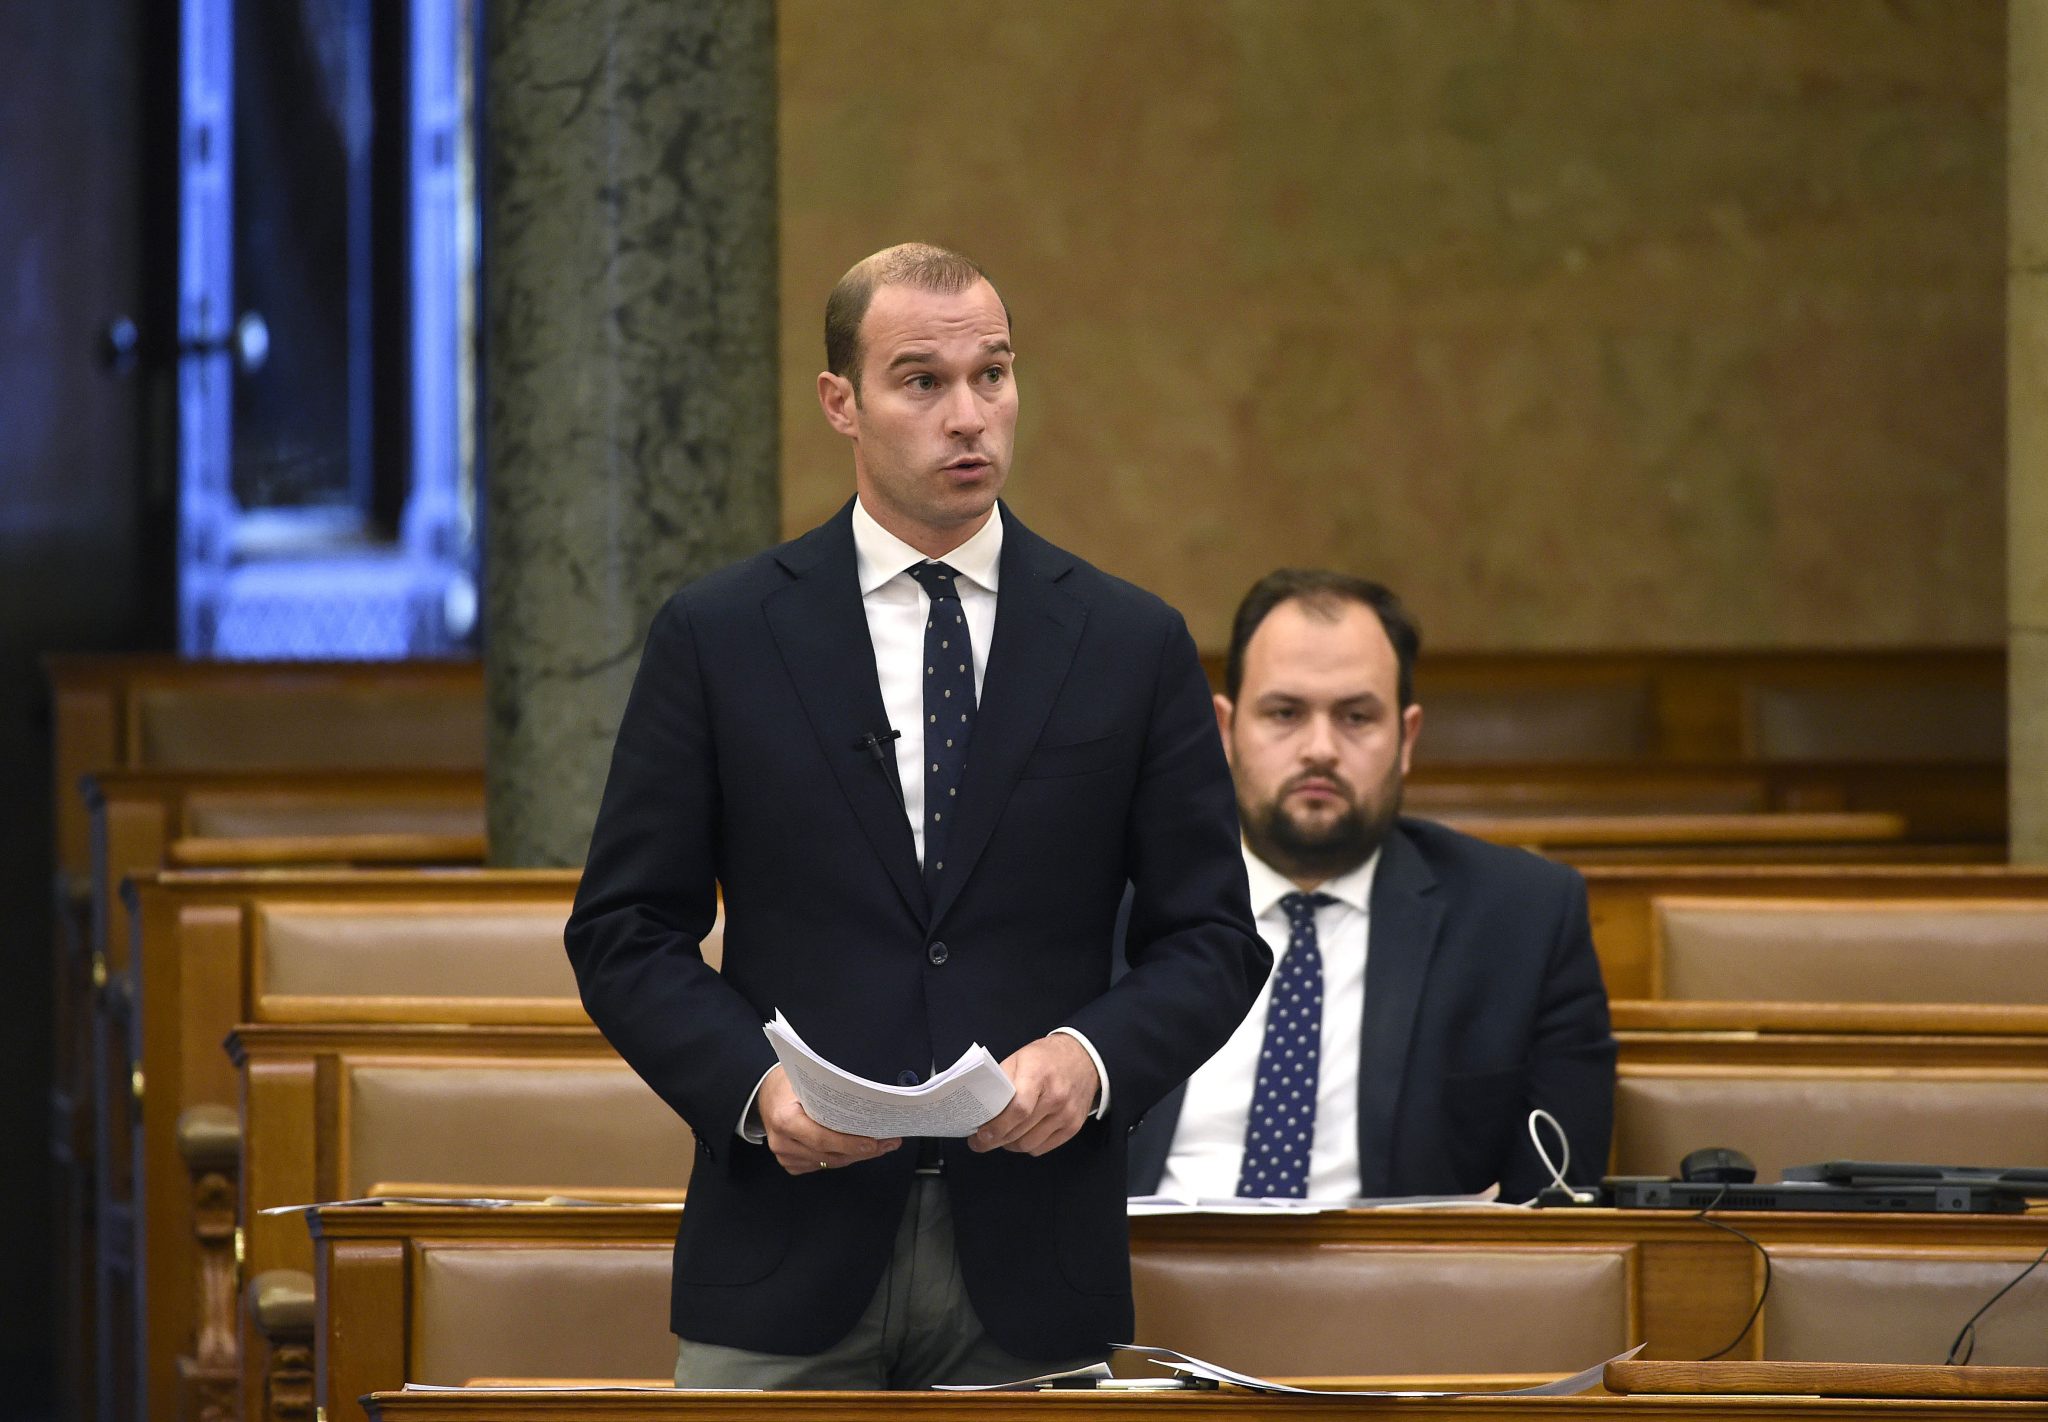 Fidesz Comms Director: EU Responsible for 'Public Utility Crisis'